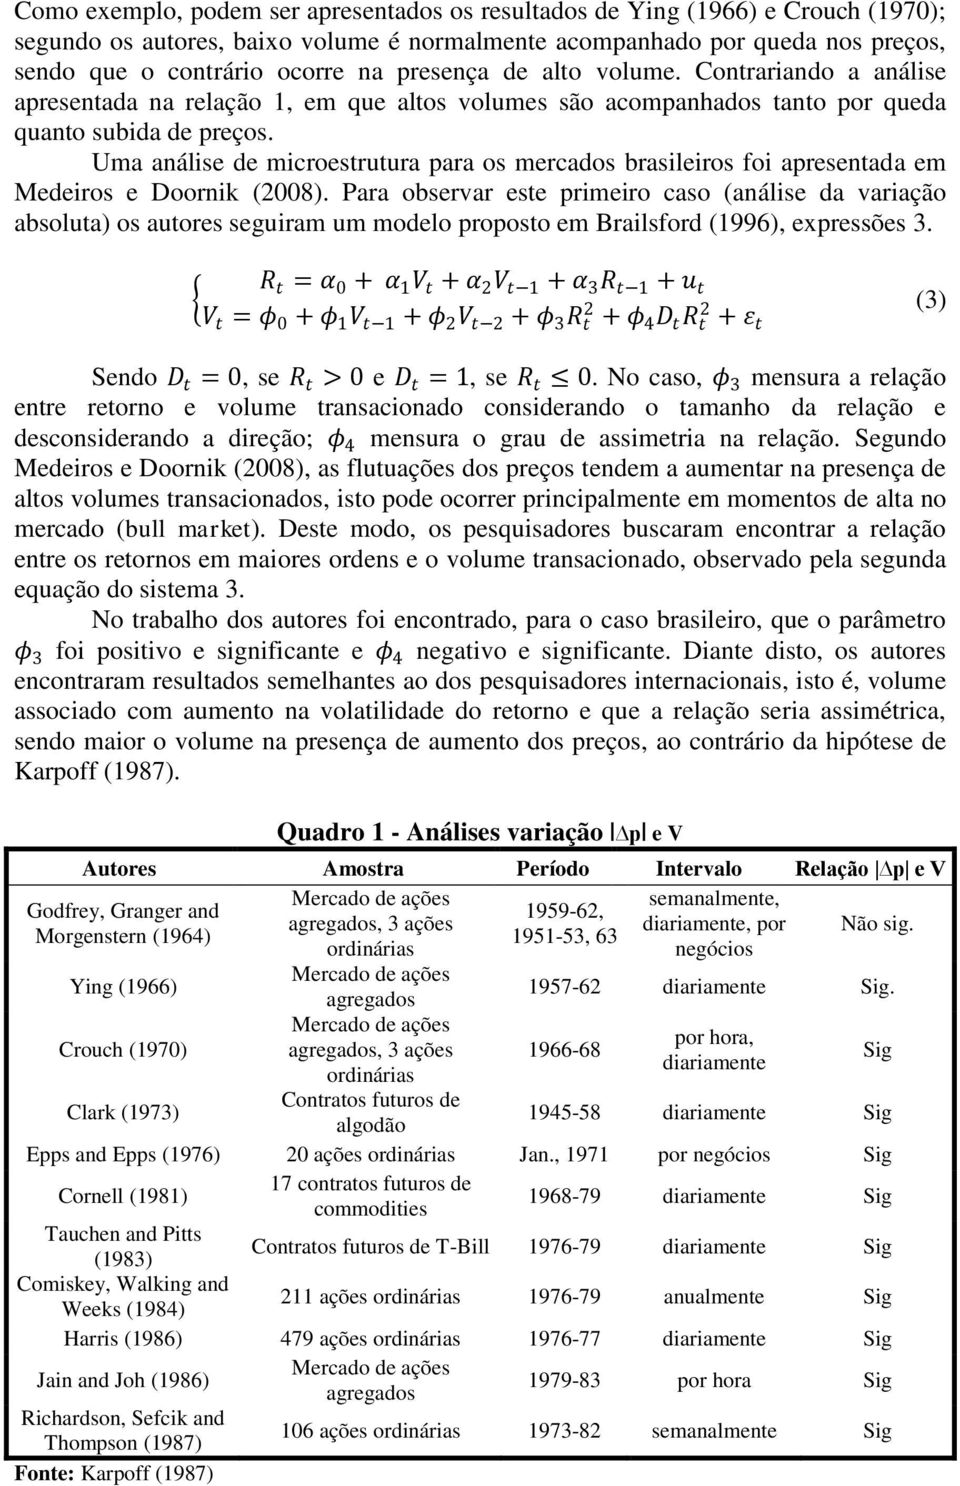 Uma análise de microestrutura para os mercados brasileiros foi apresentada em Medeiros e Doornik (2008).